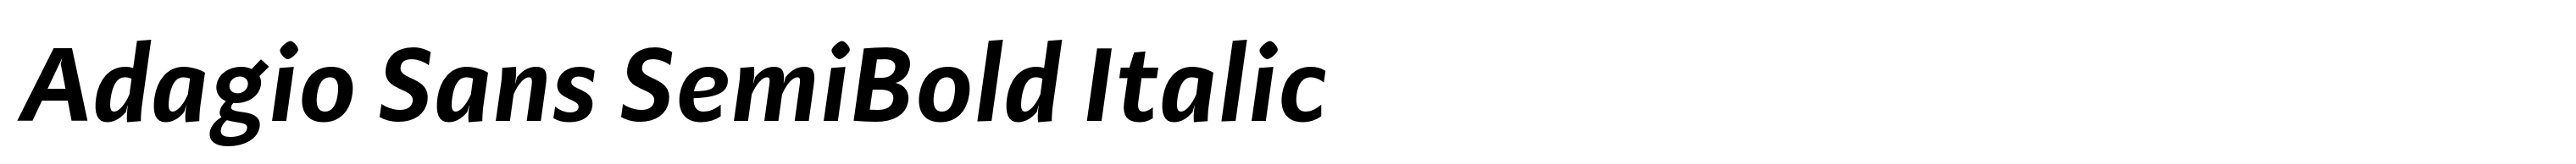 Adagio Sans SemiBold Italic